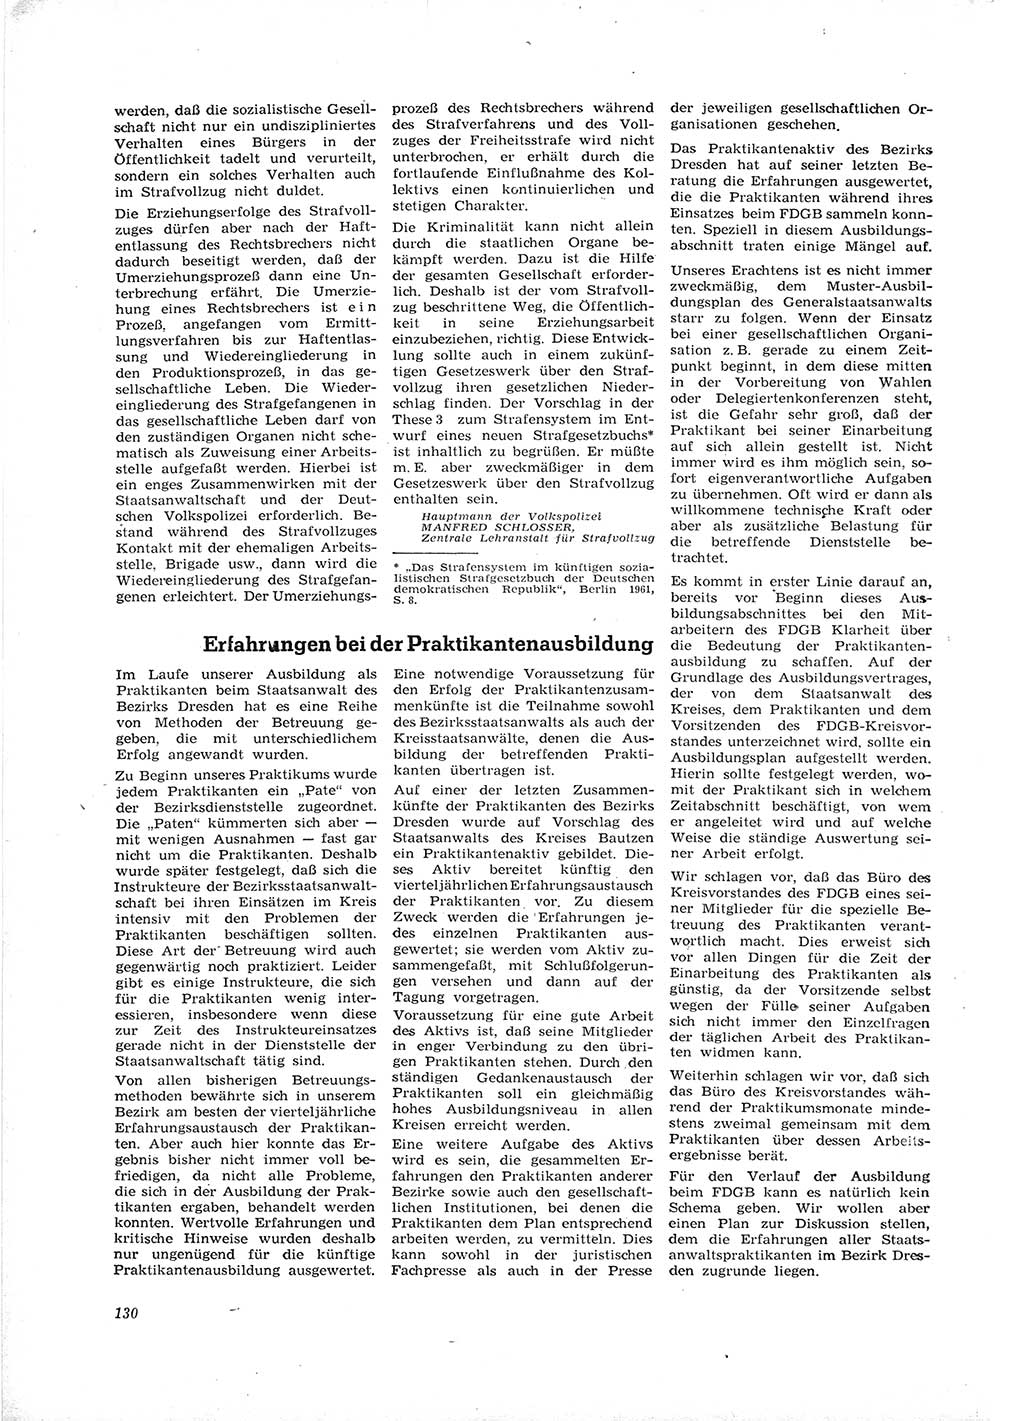 Neue Justiz (NJ), Zeitschrift für Recht und Rechtswissenschaft [Deutsche Demokratische Republik (DDR)], 16. Jahrgang 1962, Seite 130 (NJ DDR 1962, S. 130)